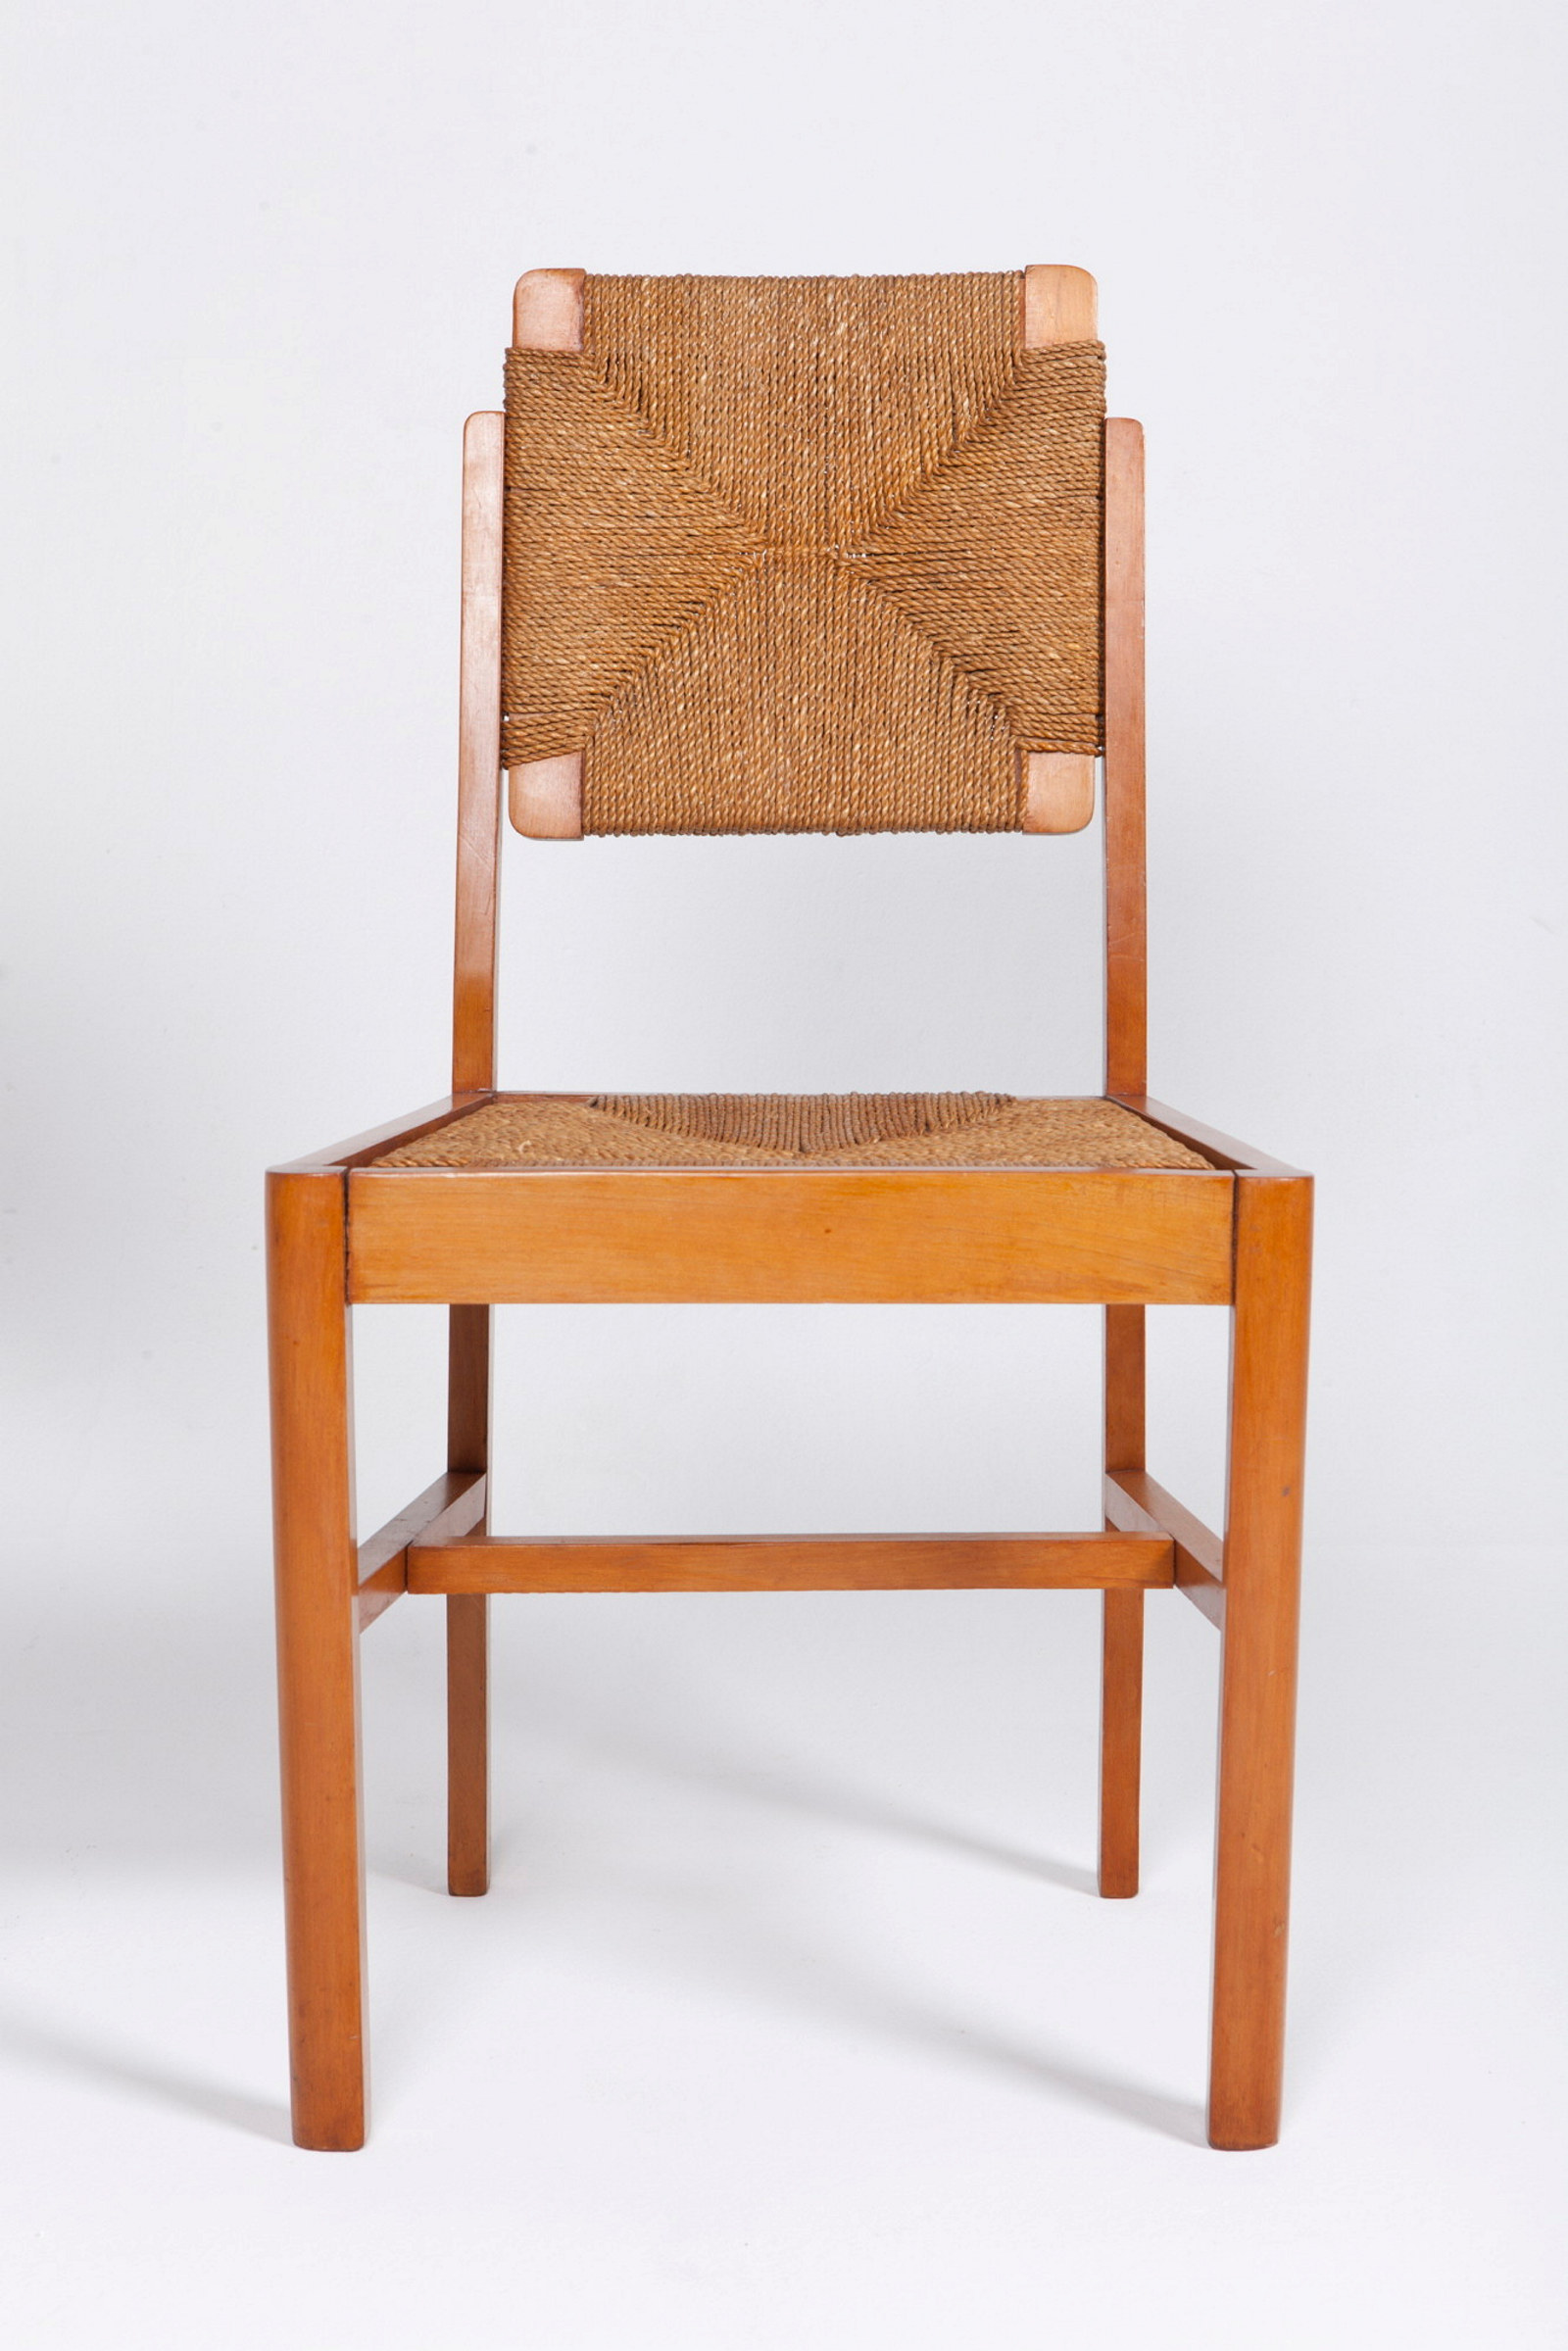 Steven Kalmar designed chair